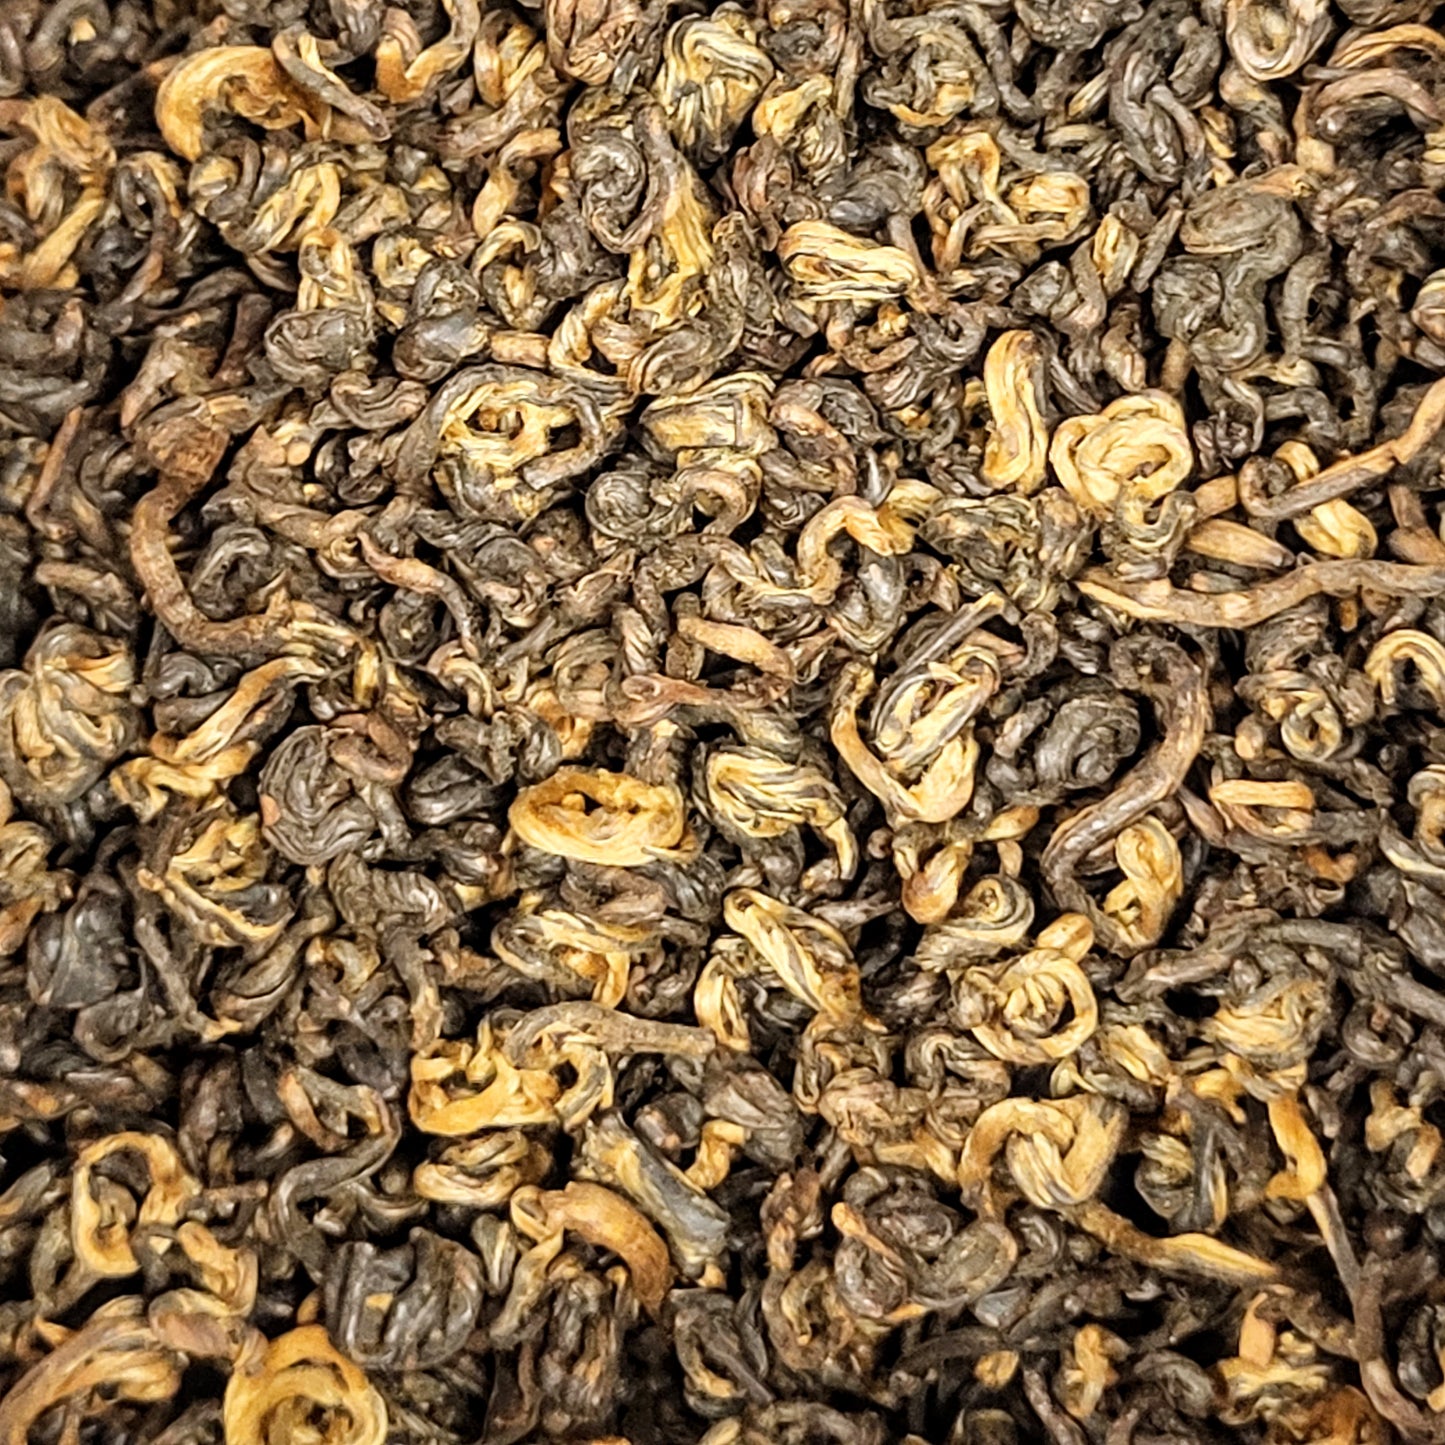 Hugo Grey Black Tea Blend 100 g